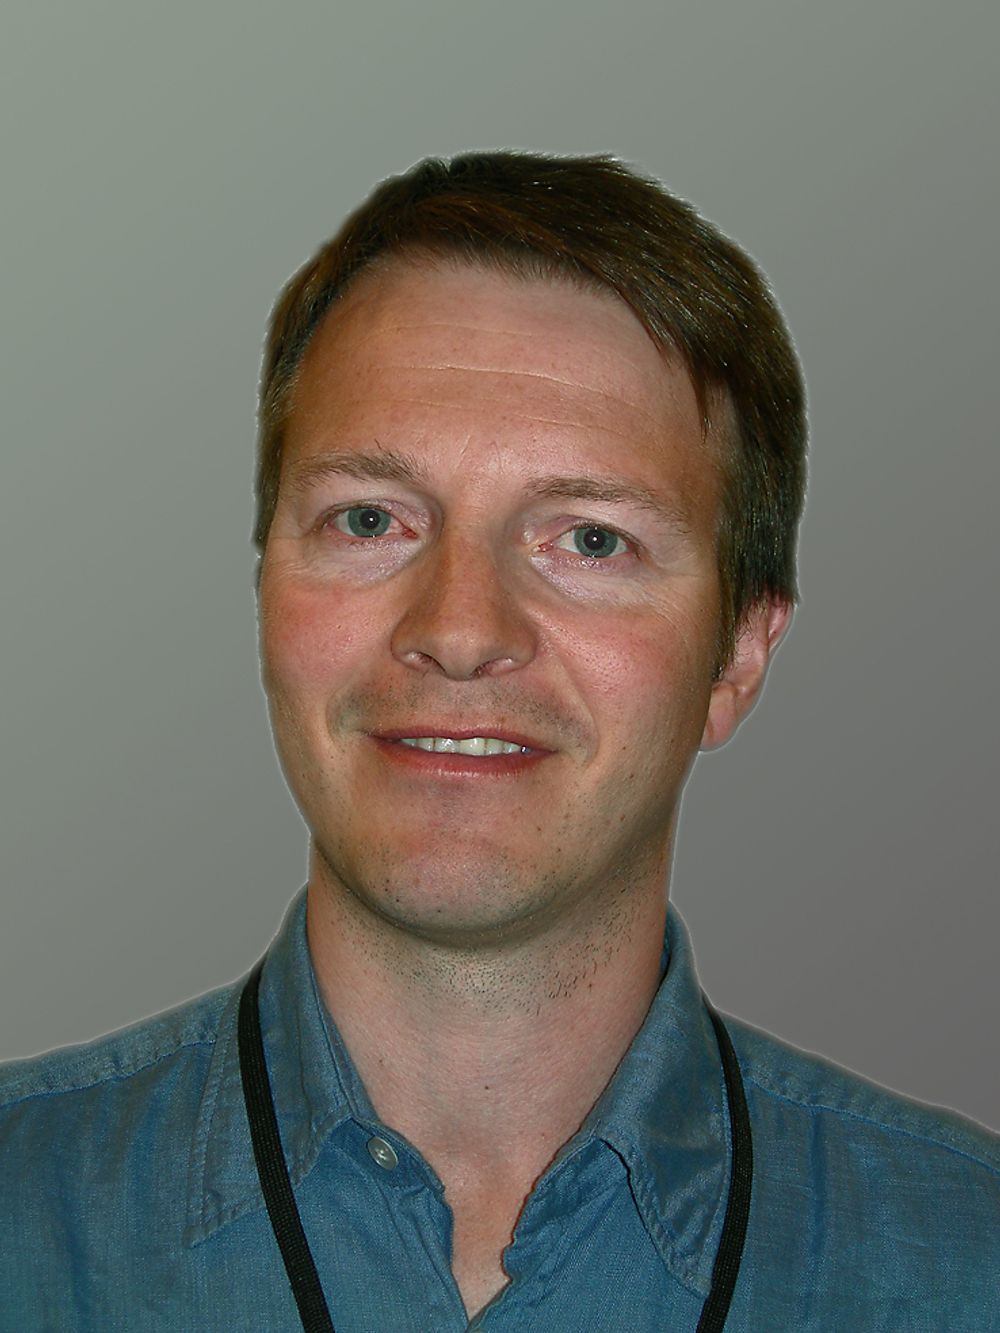 VISJONER:Adm. direktør i Tellus Software, Stig Johansen har visjoner for bruk av søketeknologi i petrodata.